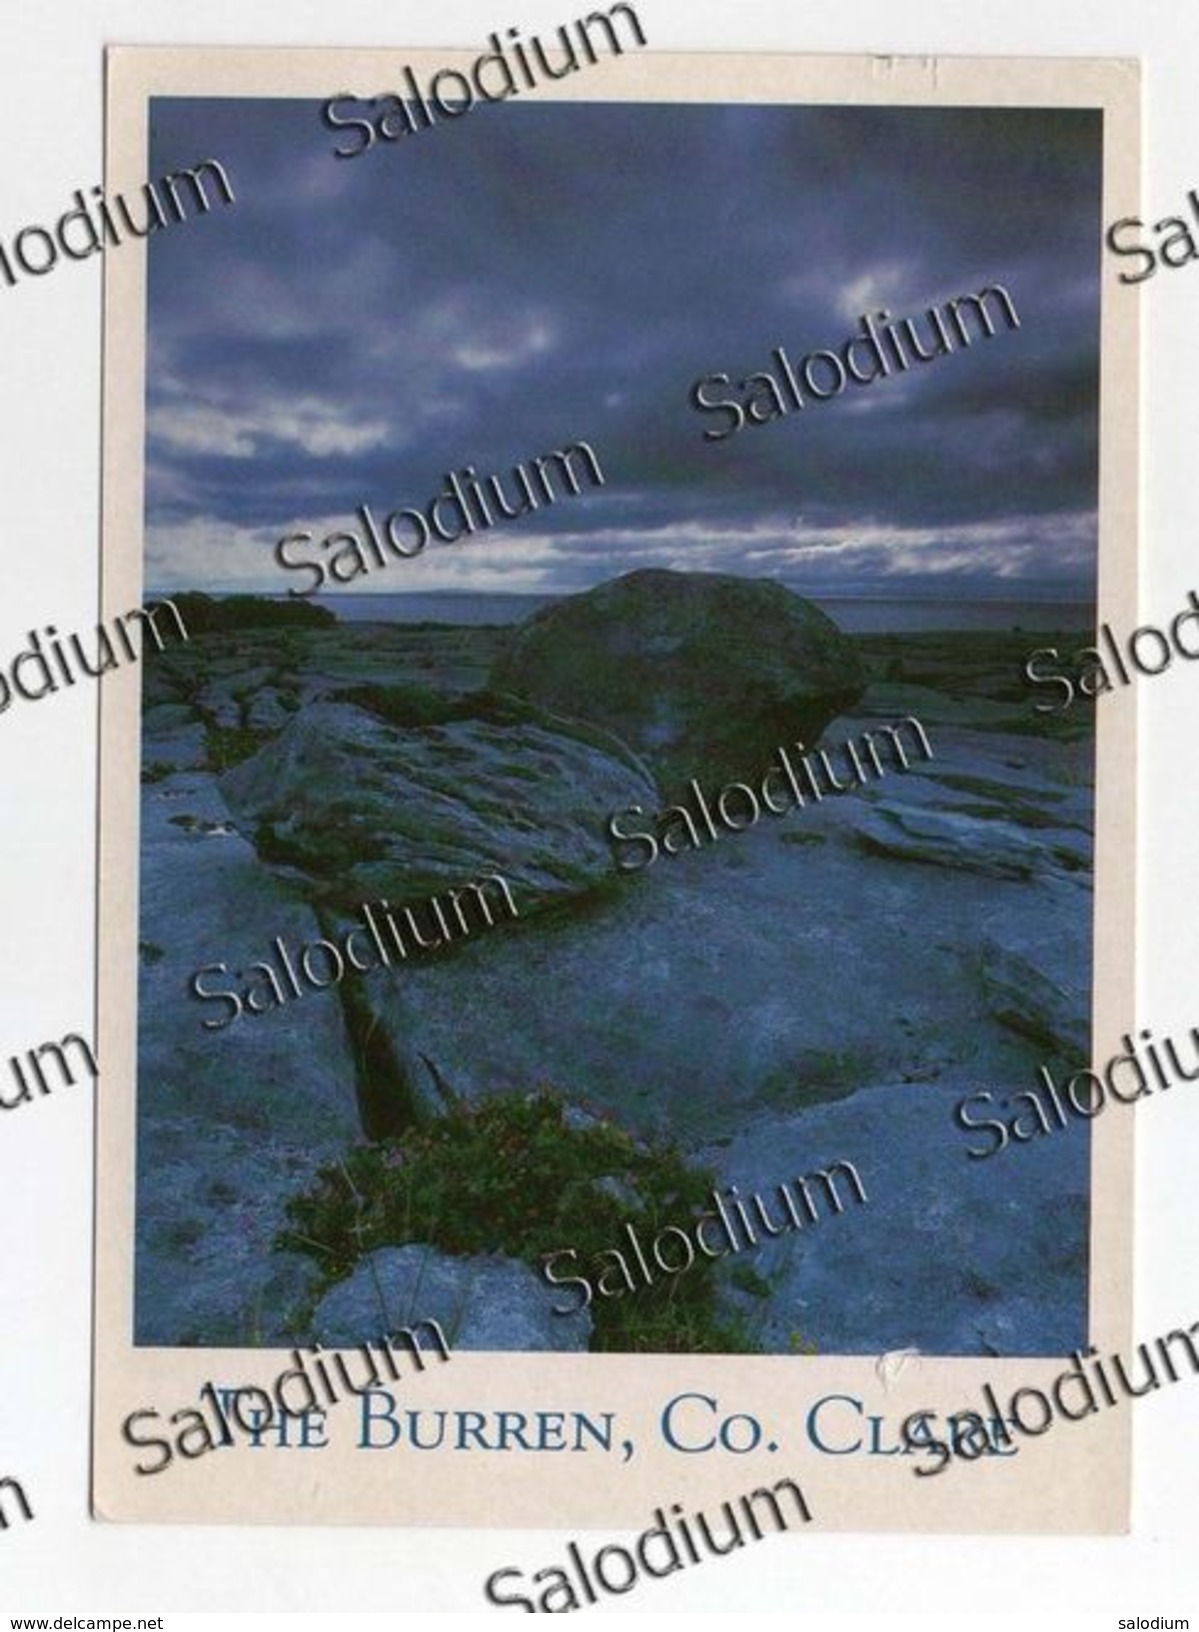 2000 - Eire Ireland Irlanda - Sotia Postale - Uccello Bird - Collect Postage - The Burren - Storia Postale